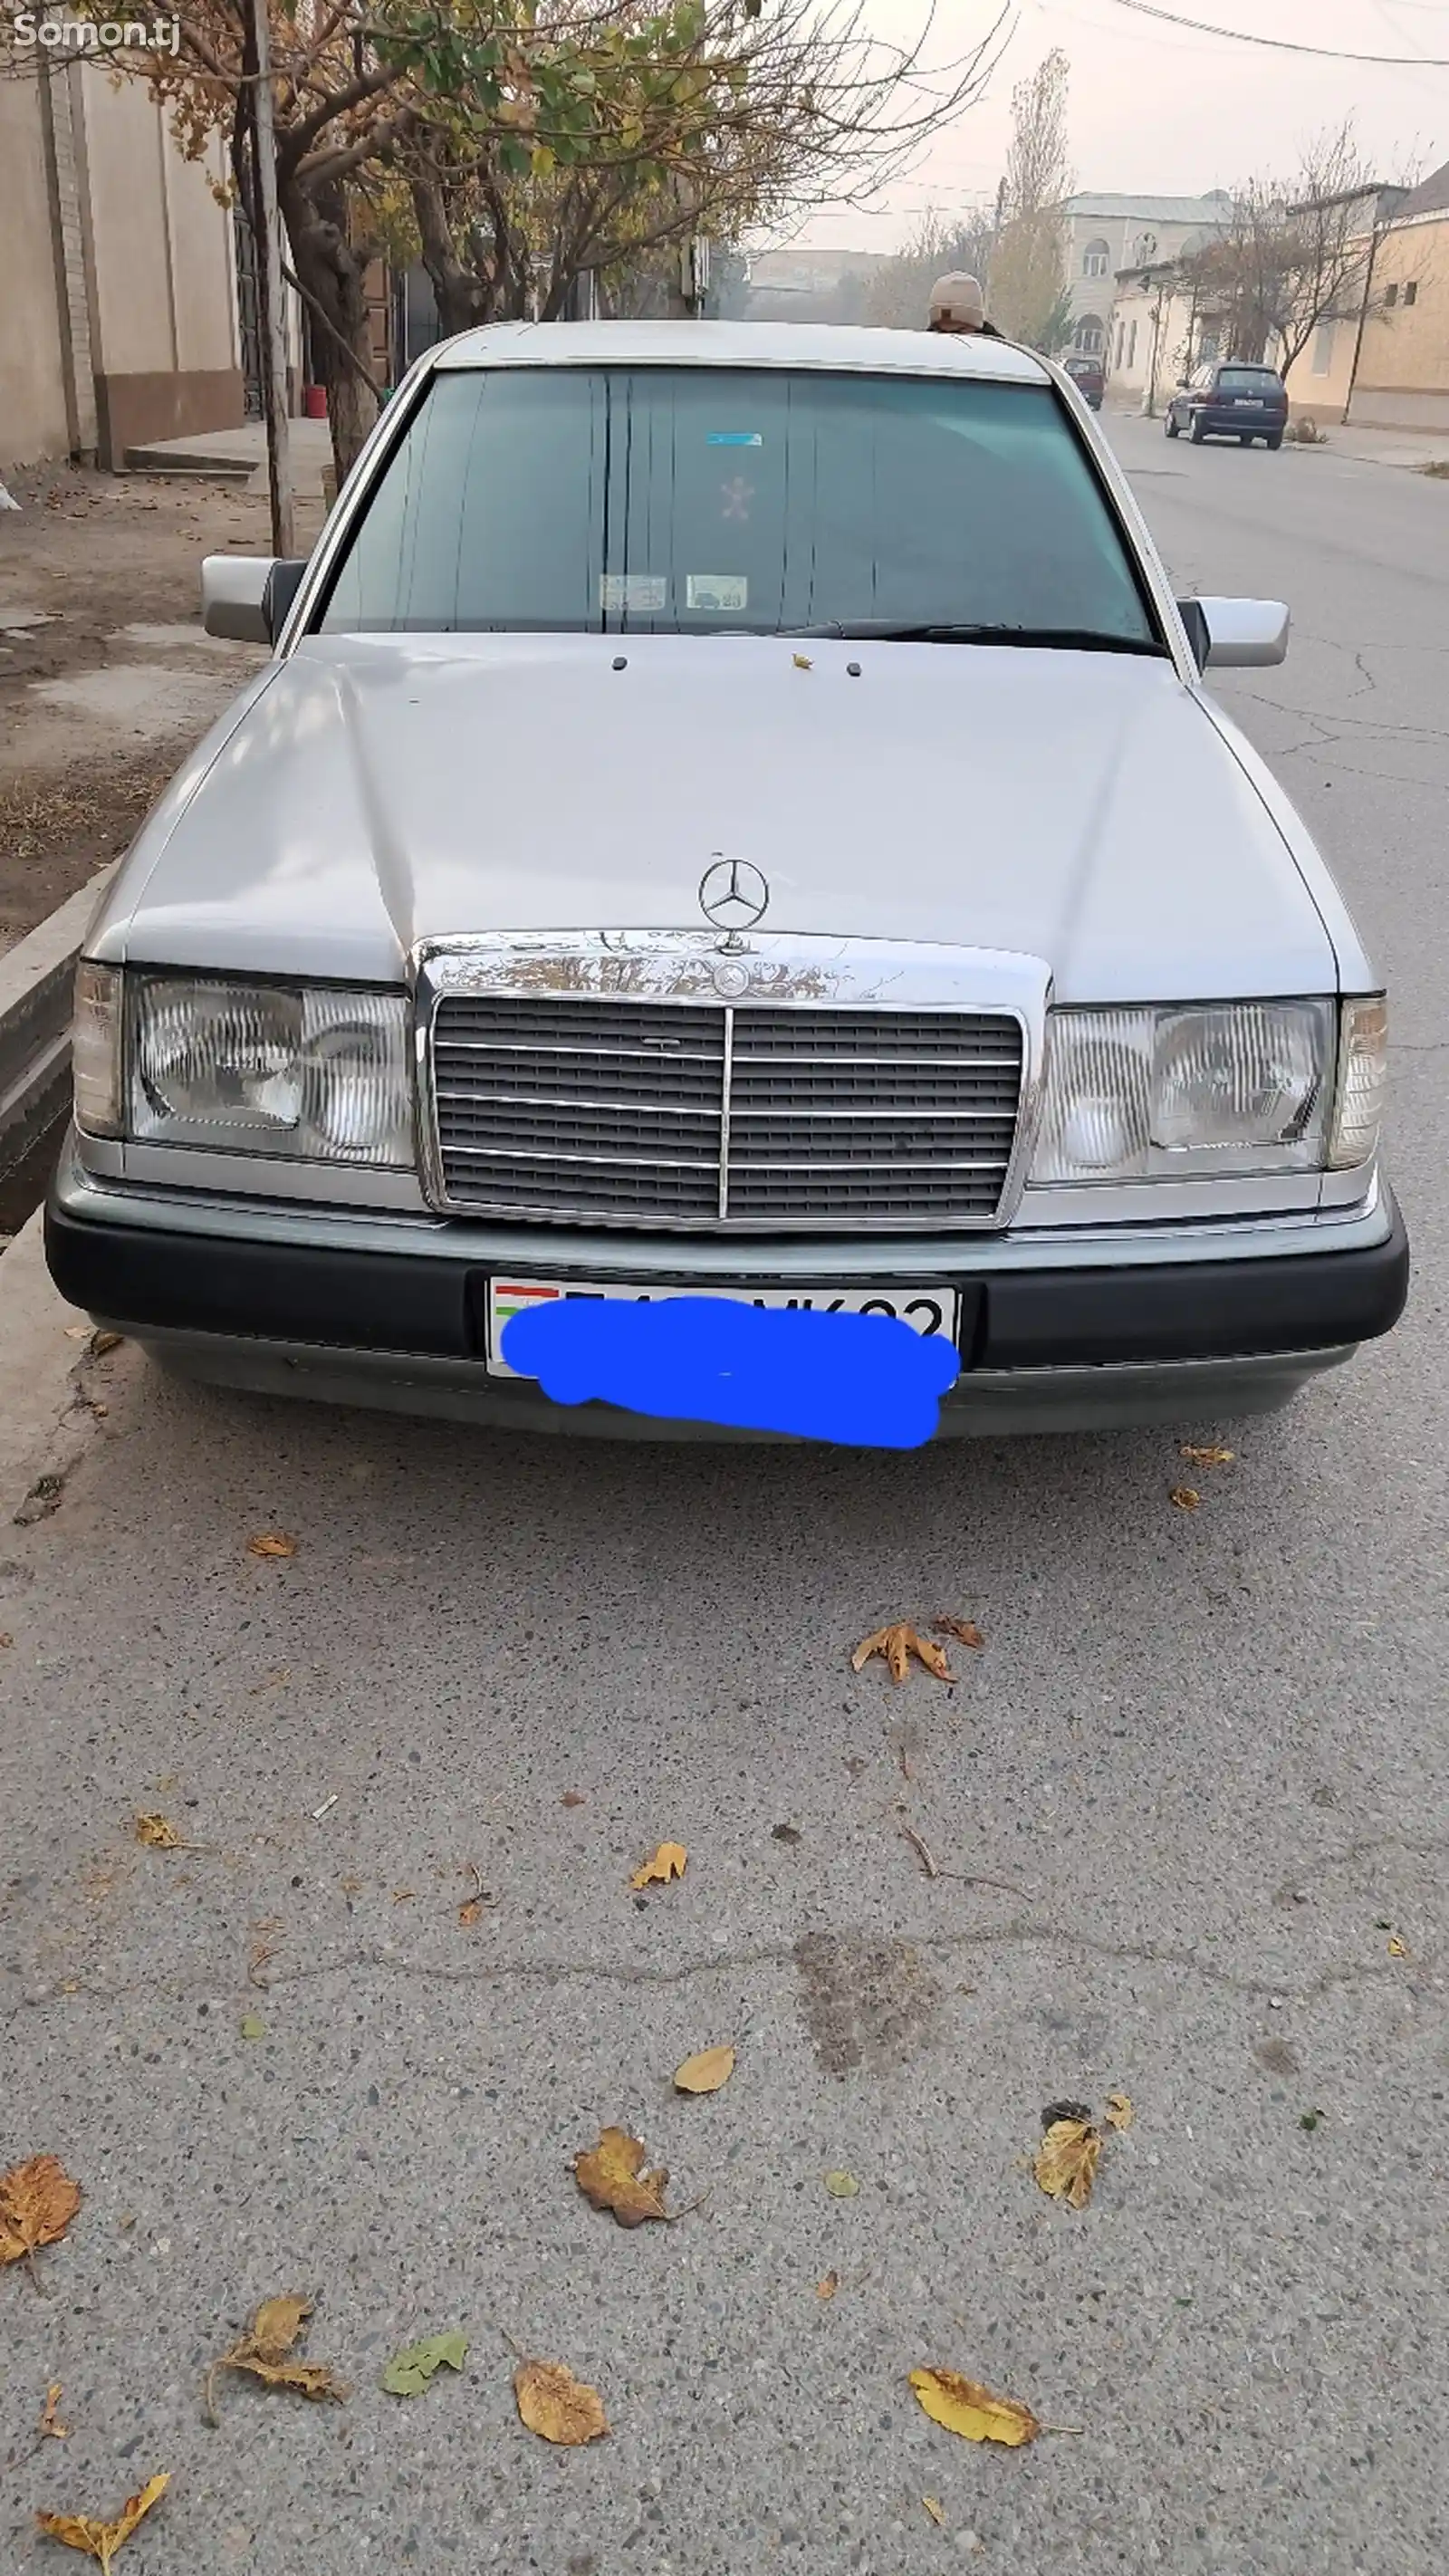 Mercedes-Benz C class, 1993-2